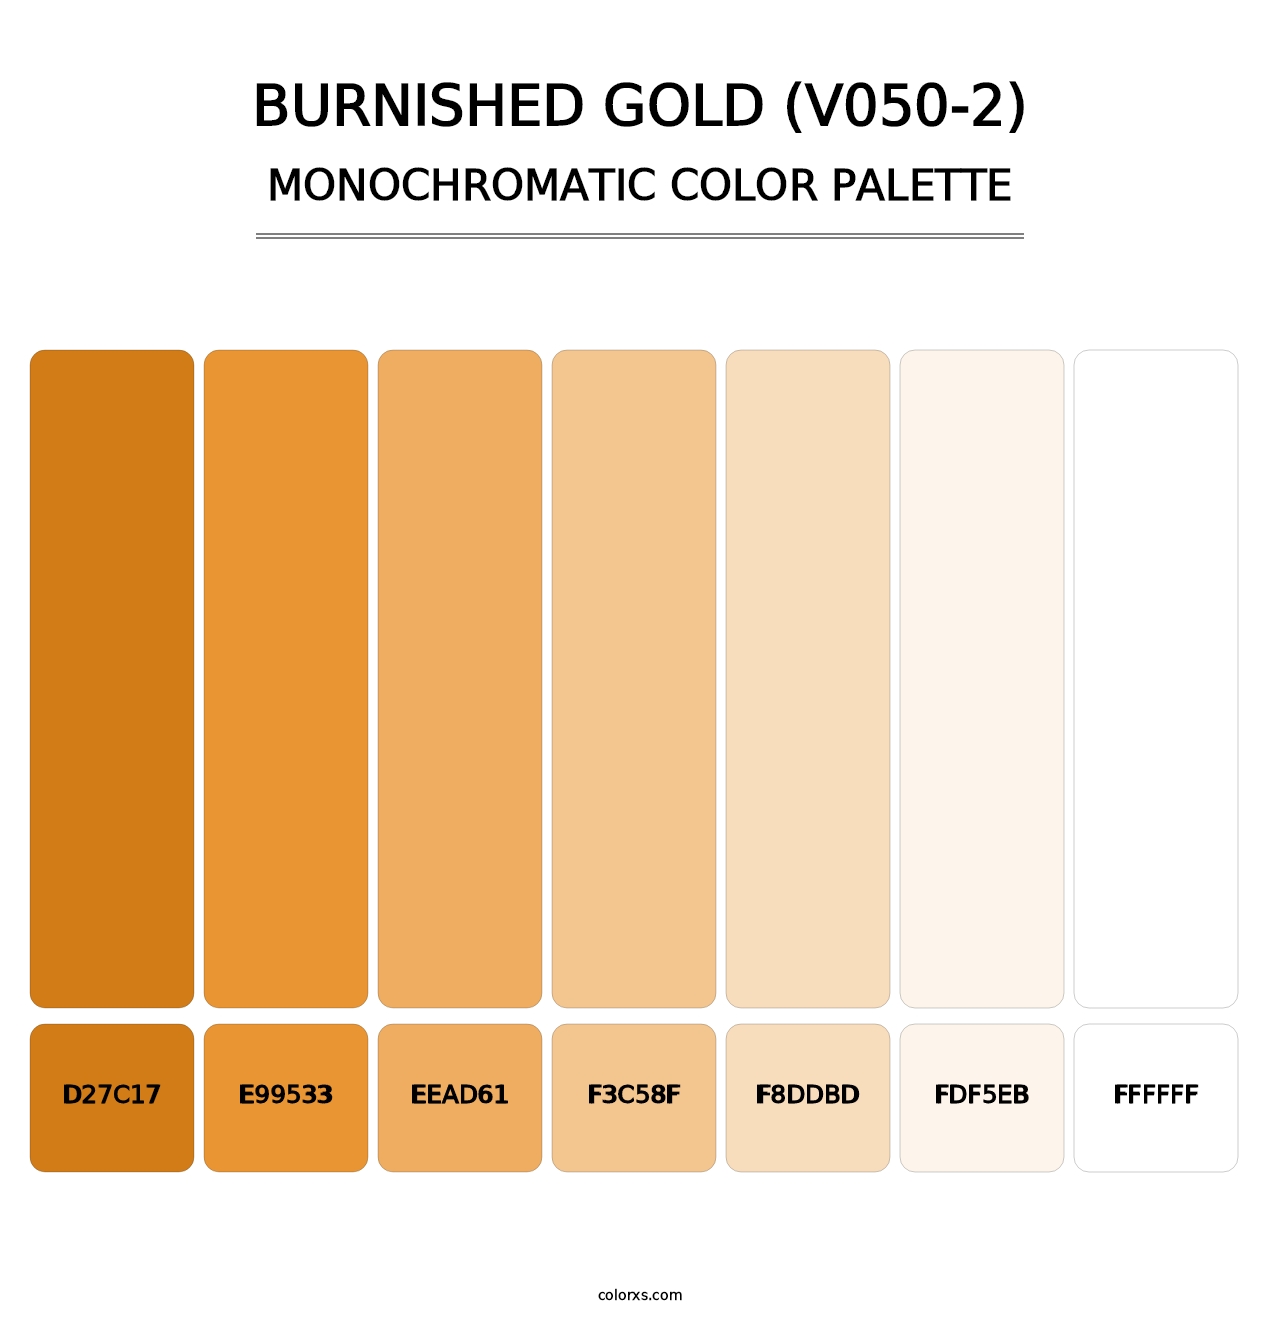 Burnished Gold (V050-2) - Monochromatic Color Palette